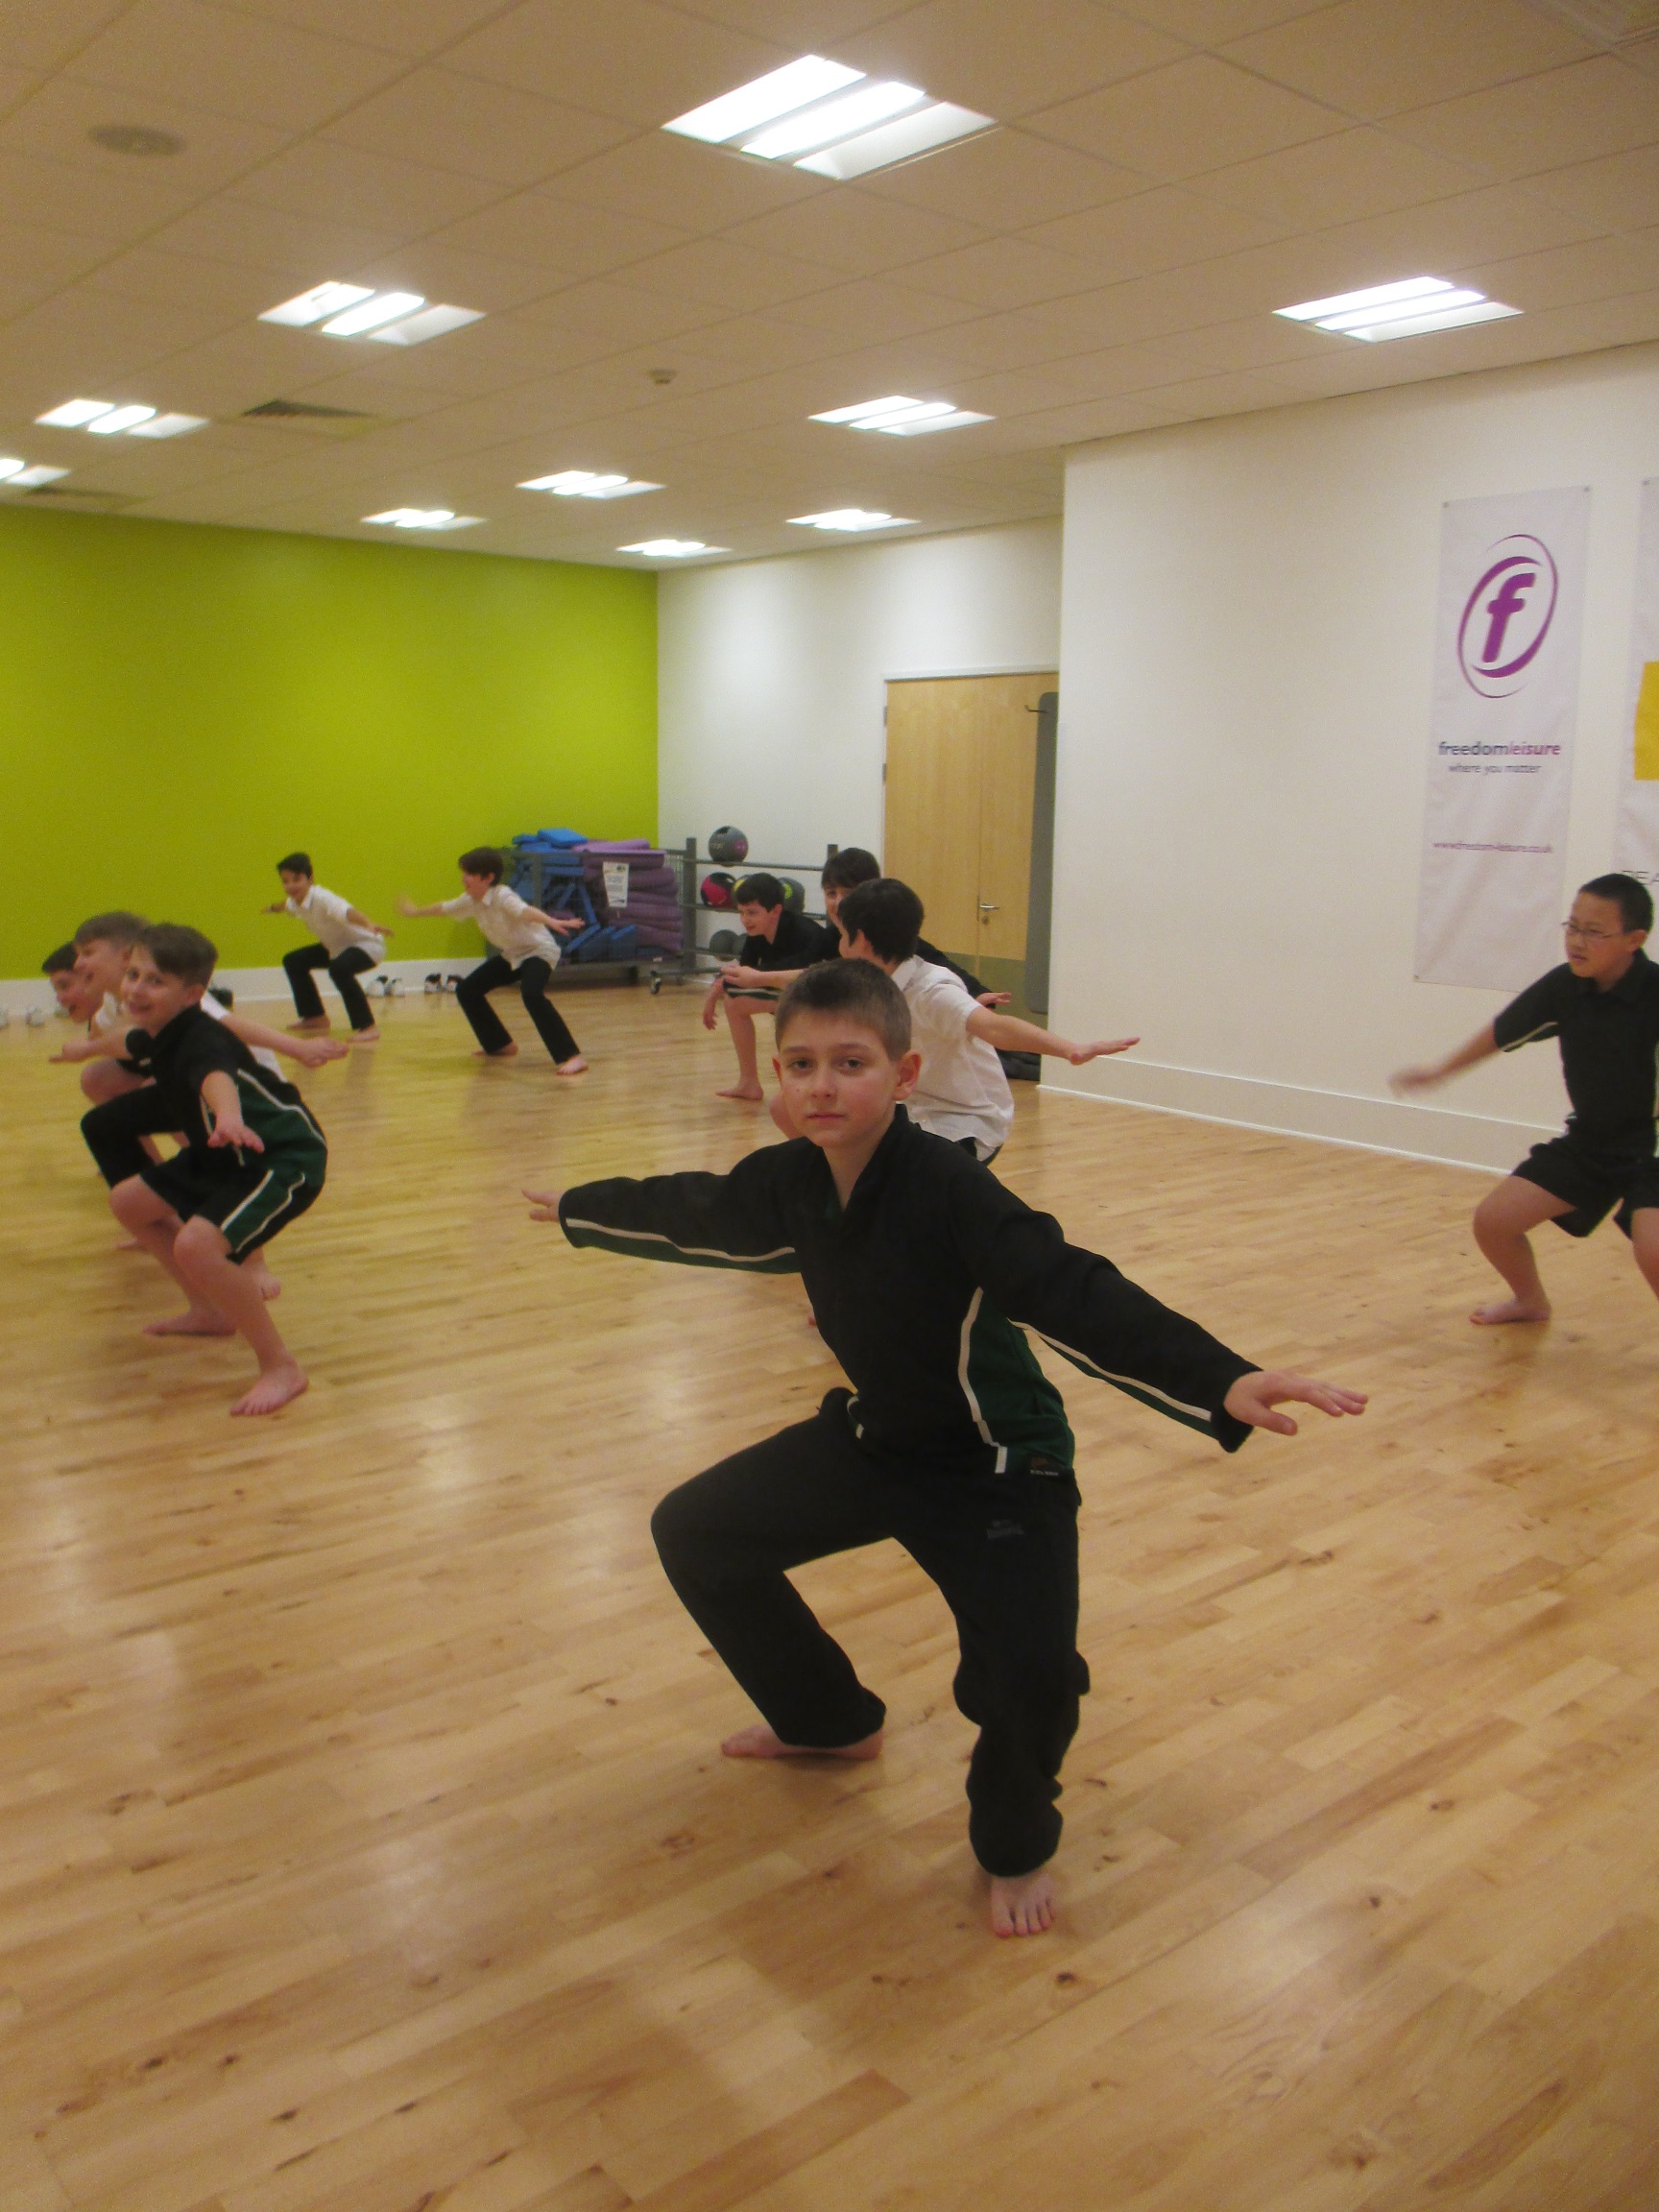  Breakdance workshop which took place at Hoe Valley School in Woking, via Freedom Leisure Woking dance studio. 